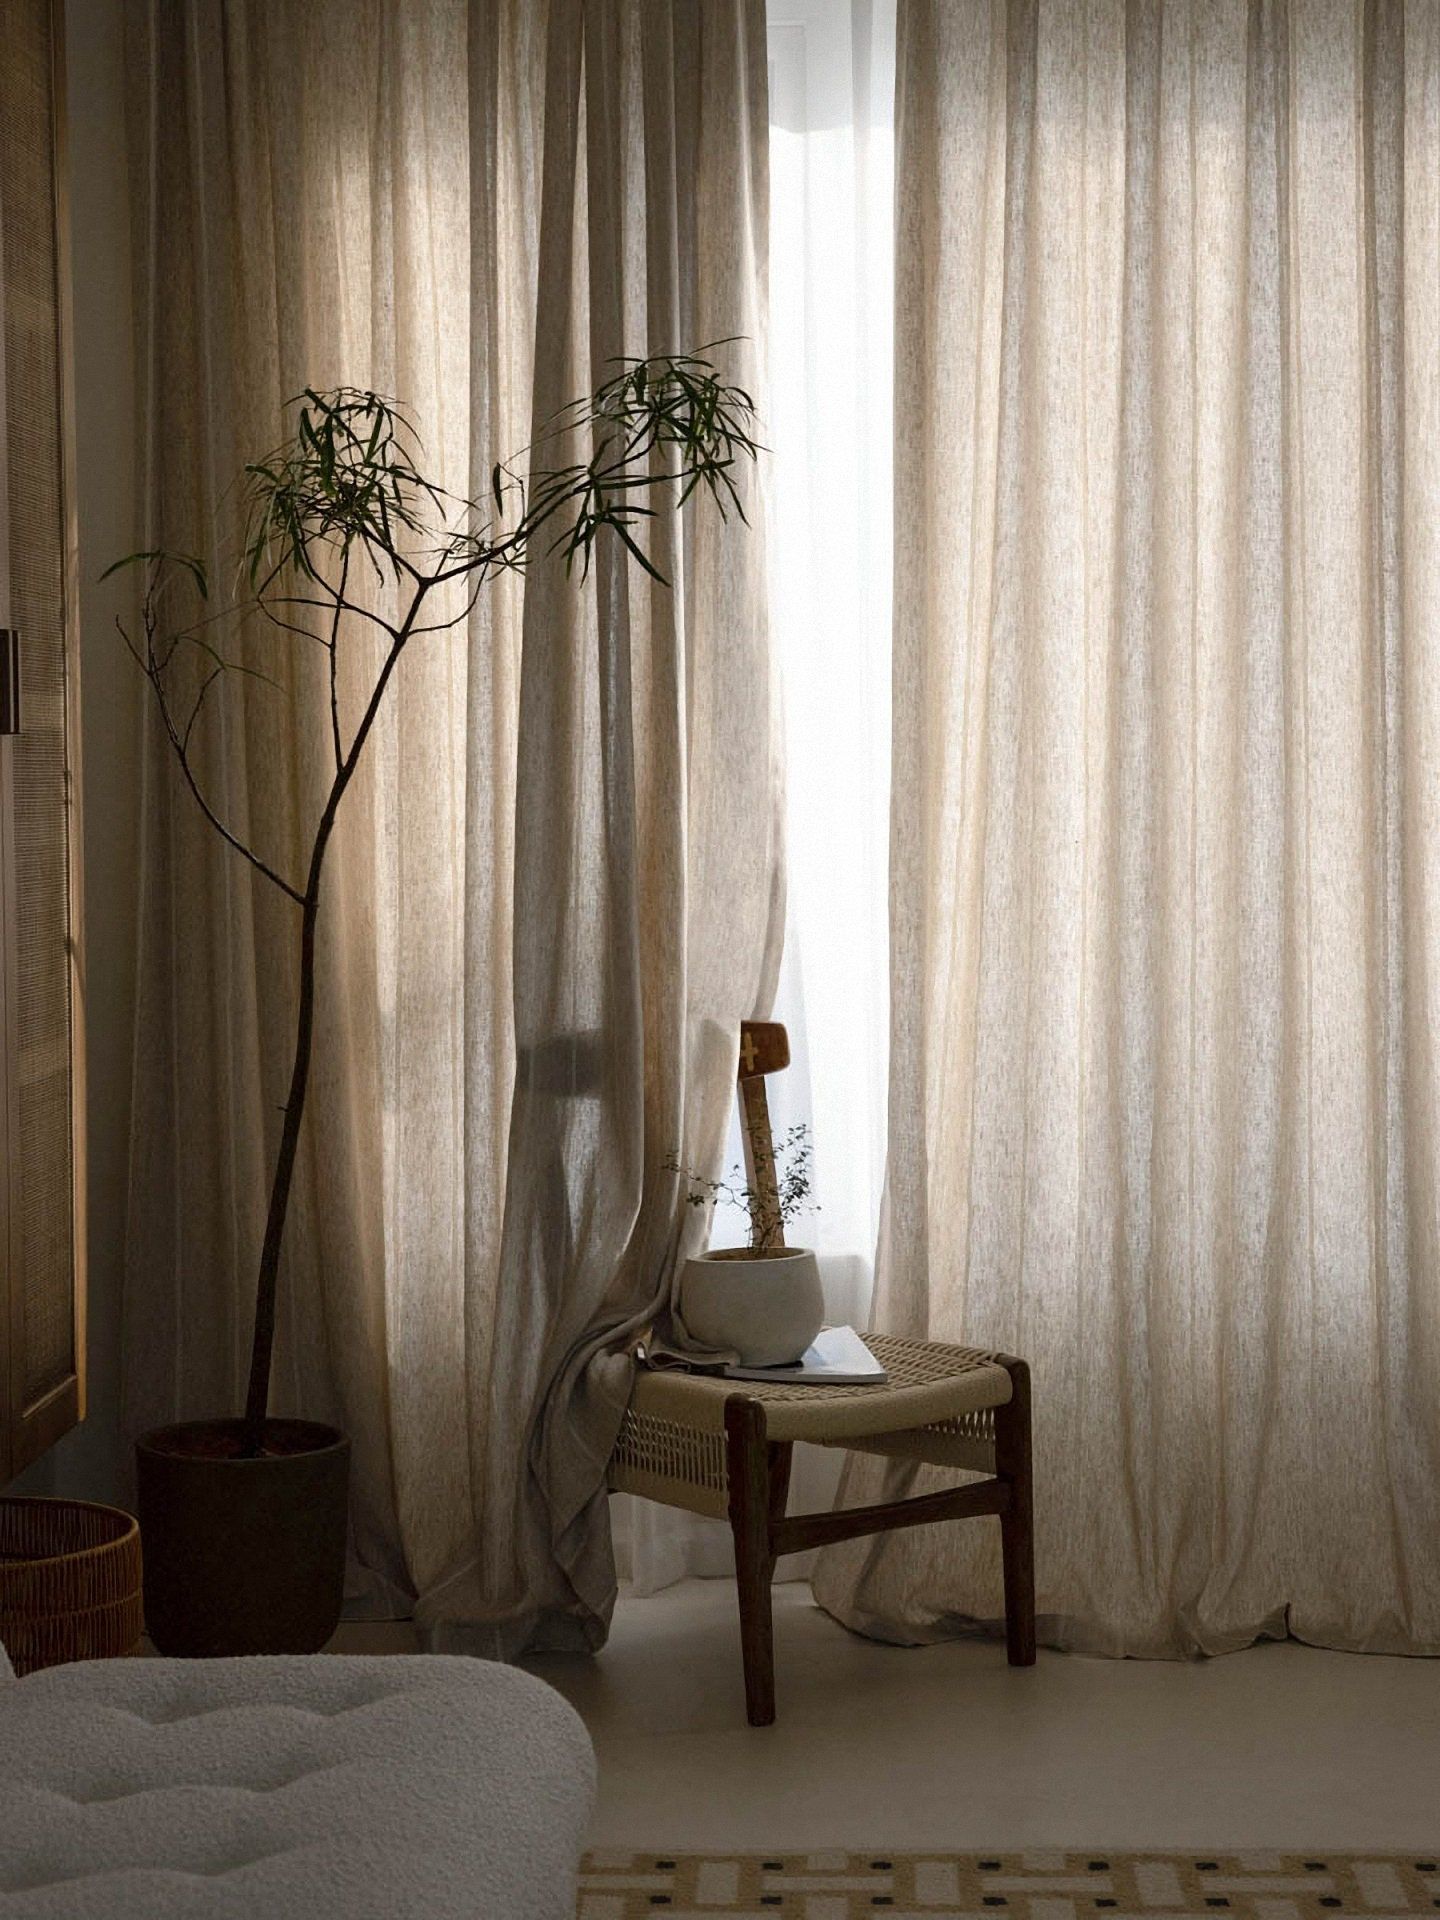 Linen Curtains